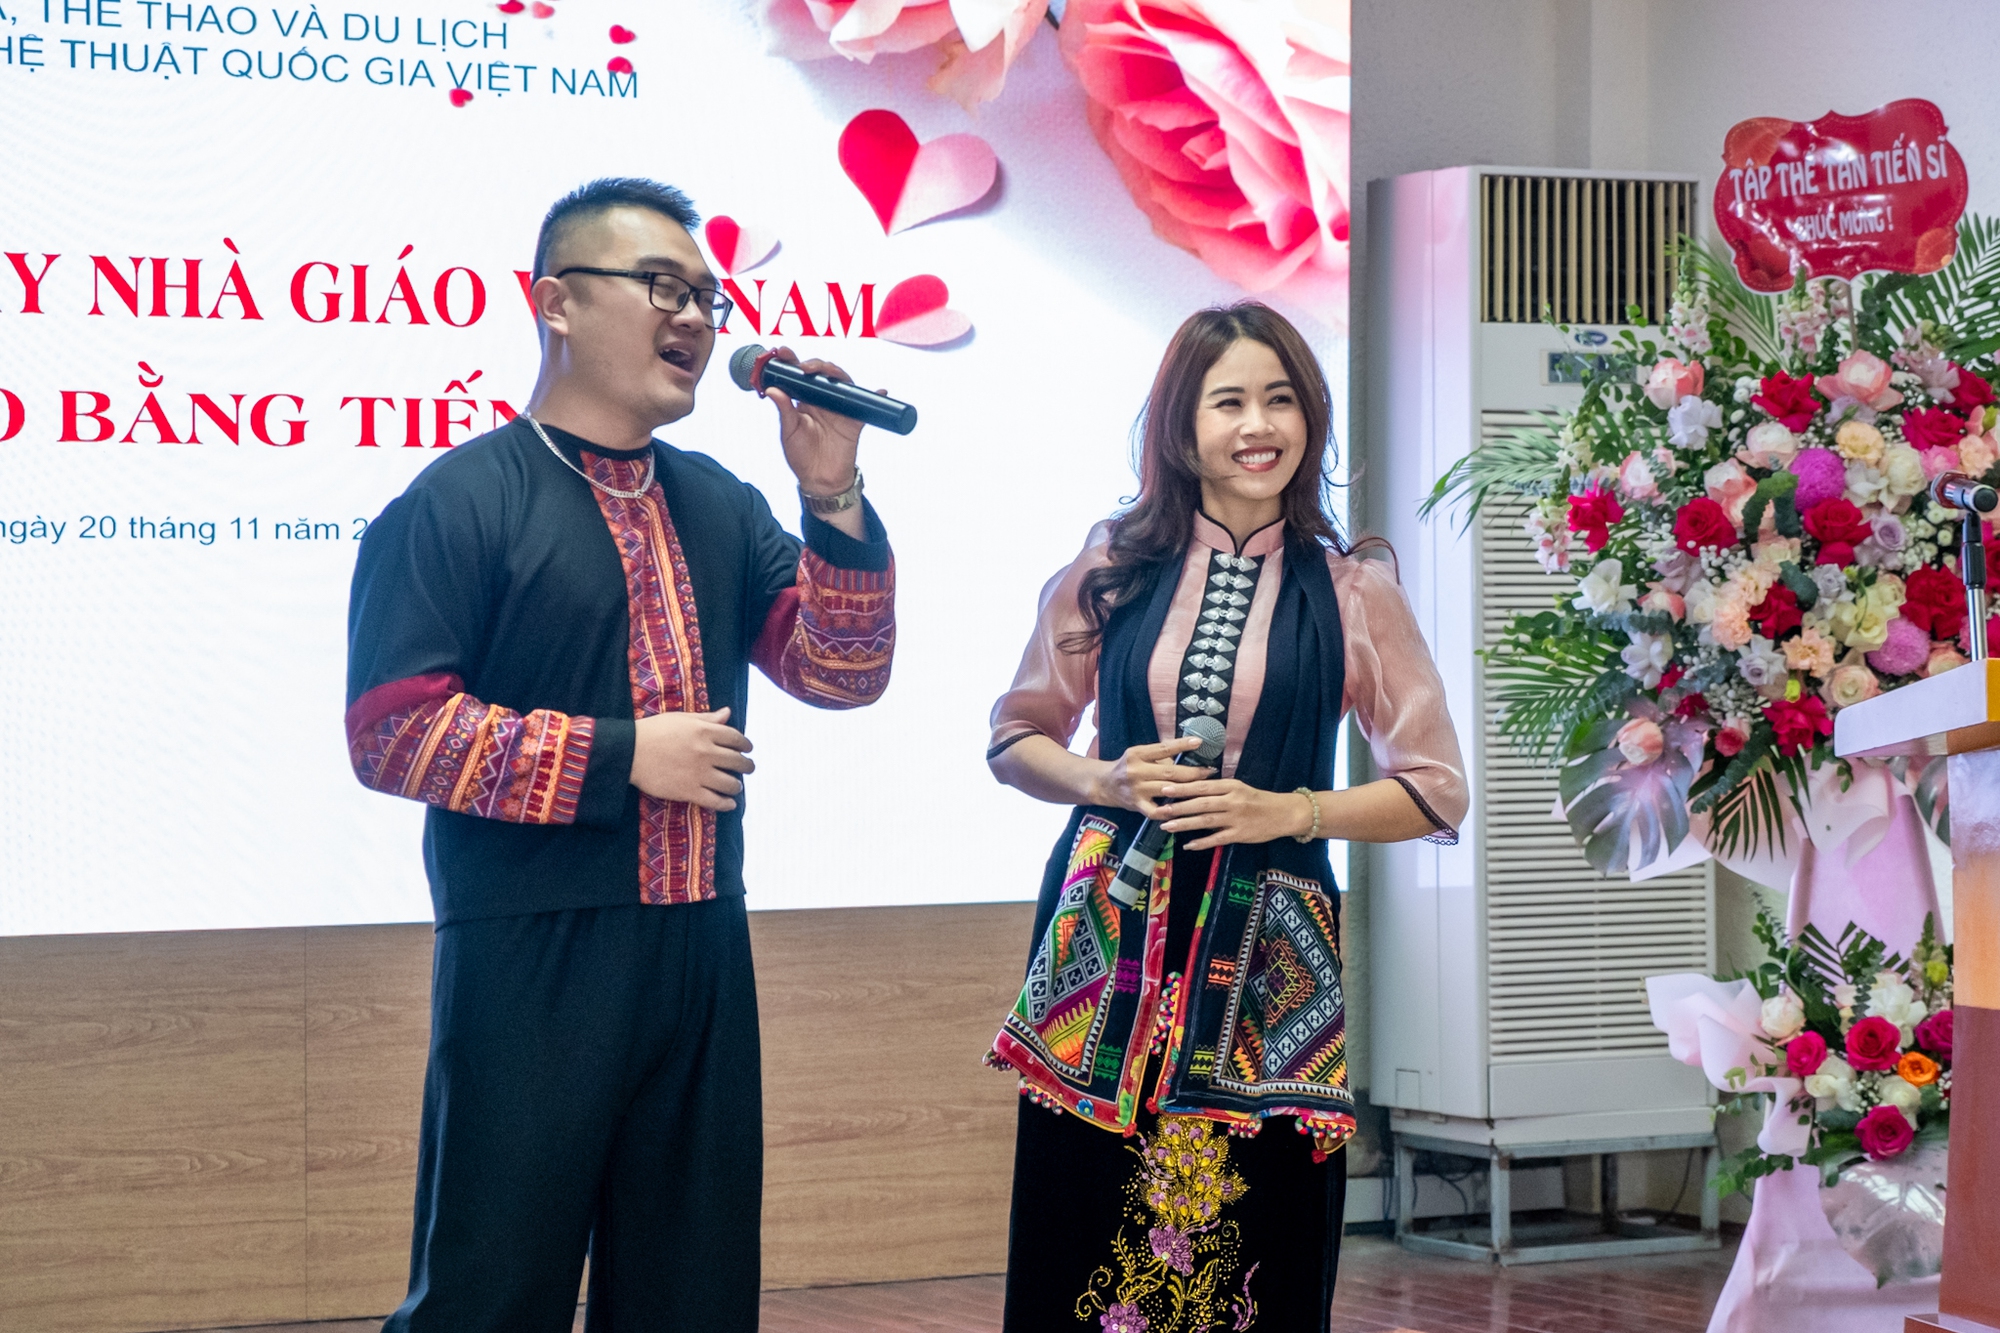 Thứ trưởng Hoàng Đạo Cương dự lễ kỷ niệm ngày nhà giáo Việt Nam và lễ trao bằng Tiến sĩ tại Viện Văn hóa Nghệ thuật quốc gia Việt Nam - Ảnh 4.